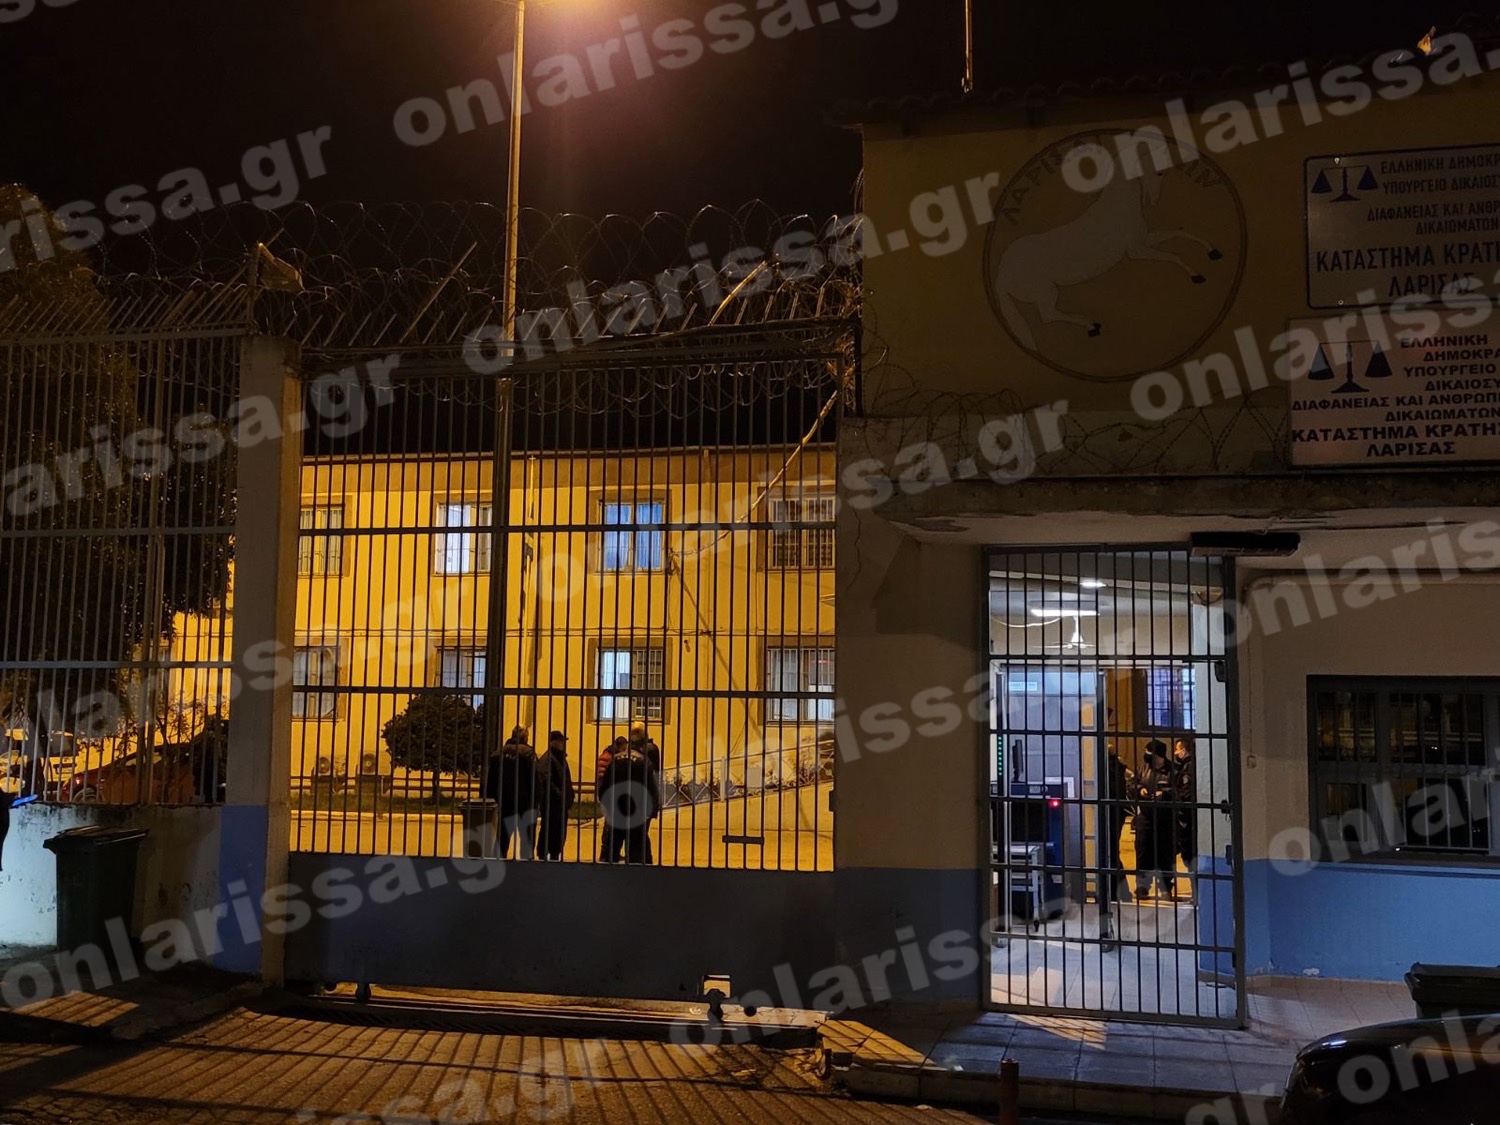 Σε εξέλιξη σφοδρή αστυνομική επέμβαση στις φυλακές Λάρισας (Βίντεο)